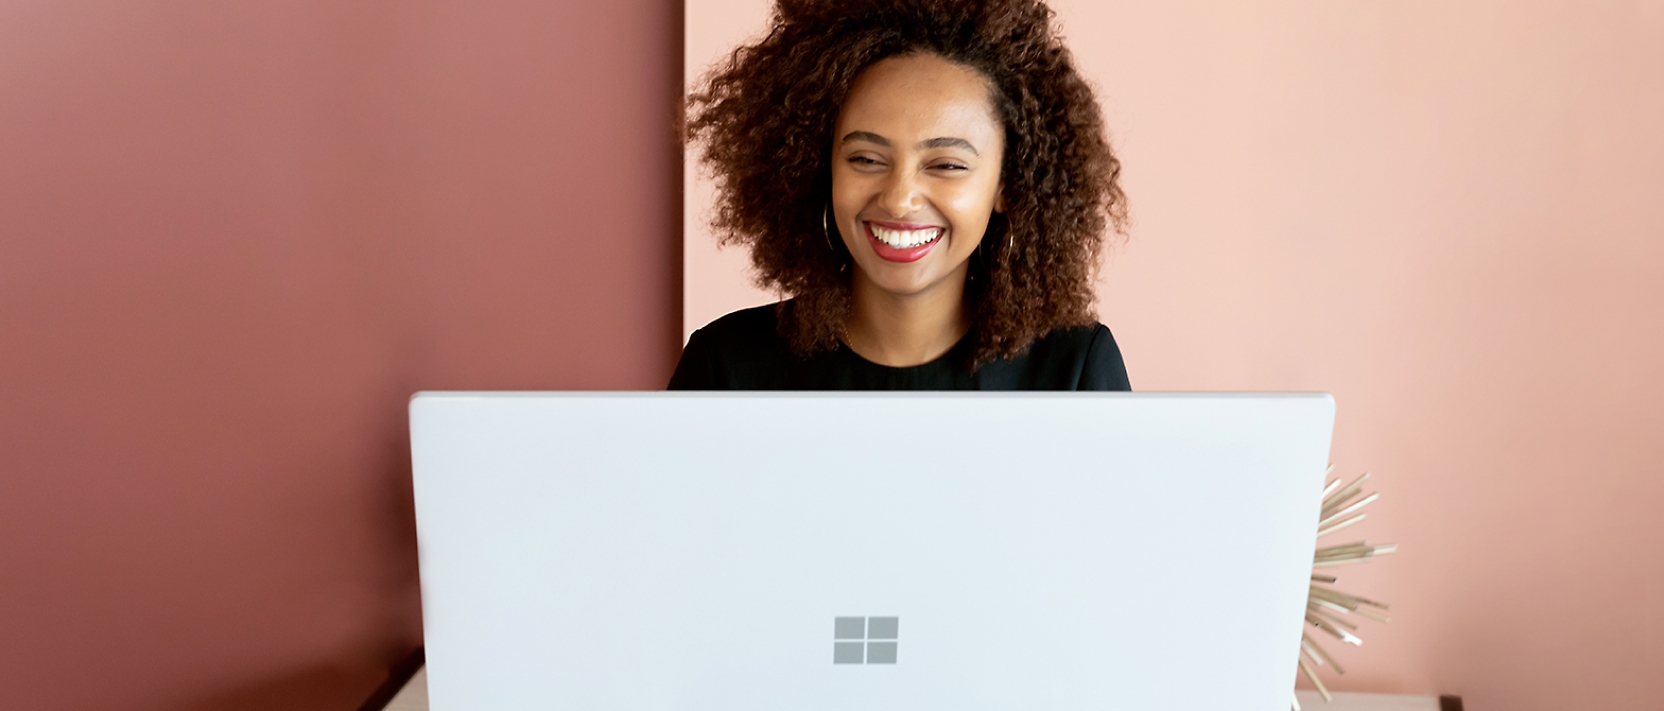 Une femme sourit en travaillant sur un ordinateur portable.